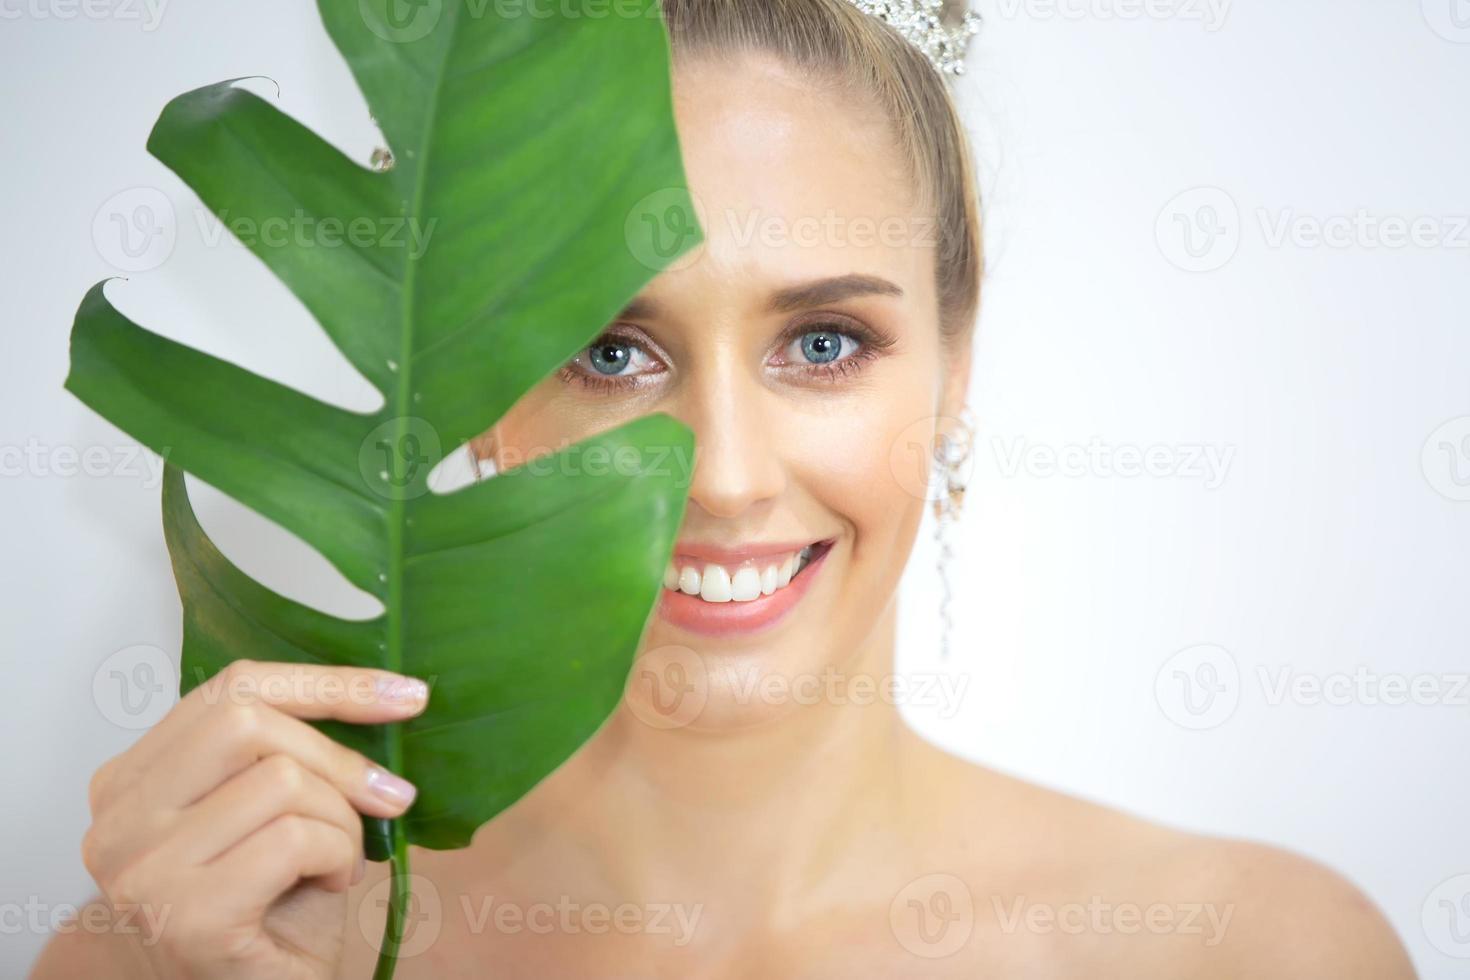 ritratto di giovane donna sorridente su sfondo bianco grigio foto